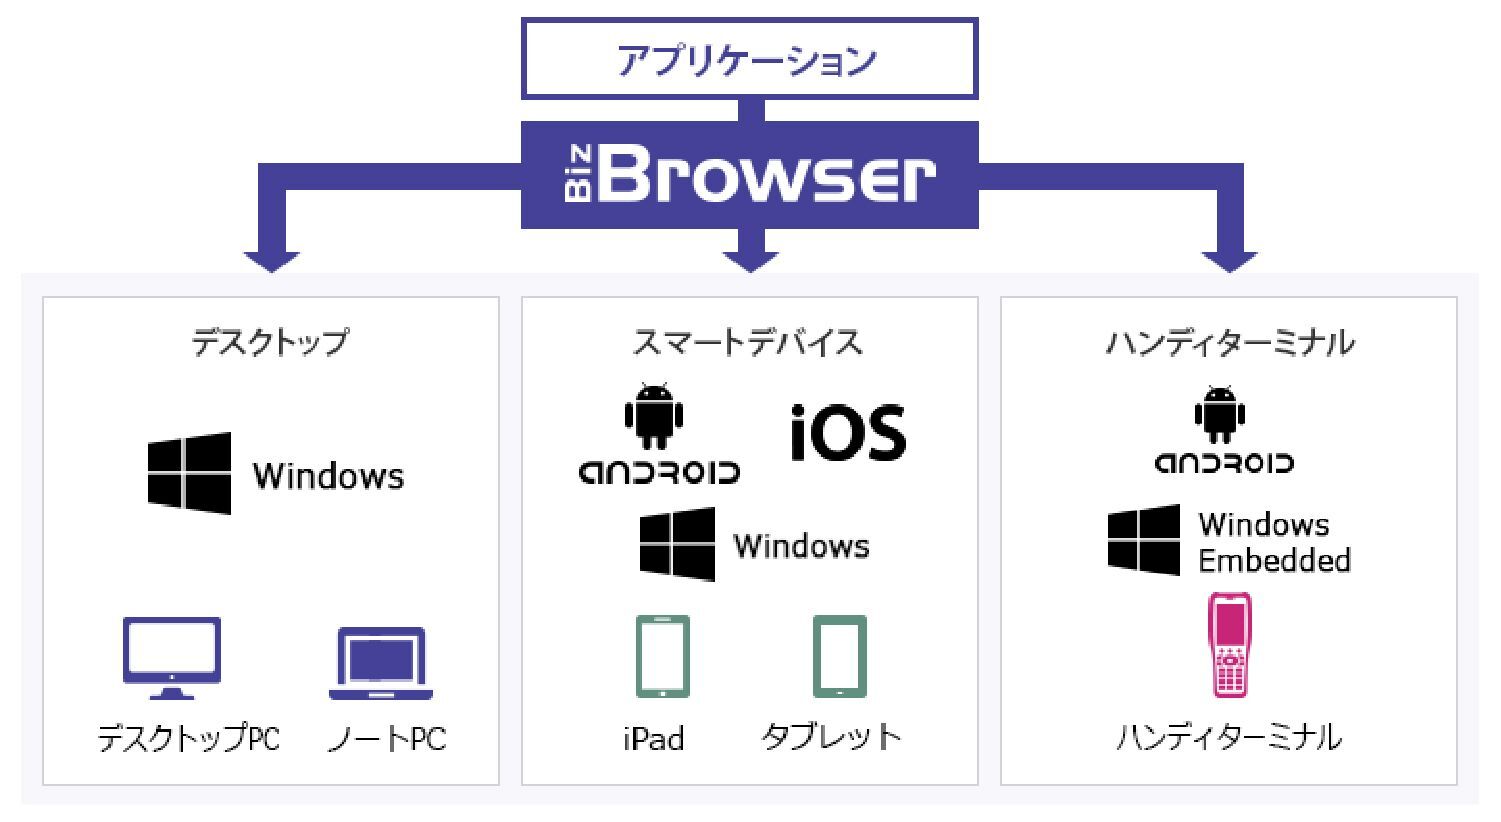 オープンストリーム Android Os搭載のハンディターミナルに対応したbiz Browser Ht 仮 を開発 中 株式会社豆蔵ホールディングスのプレスリリース